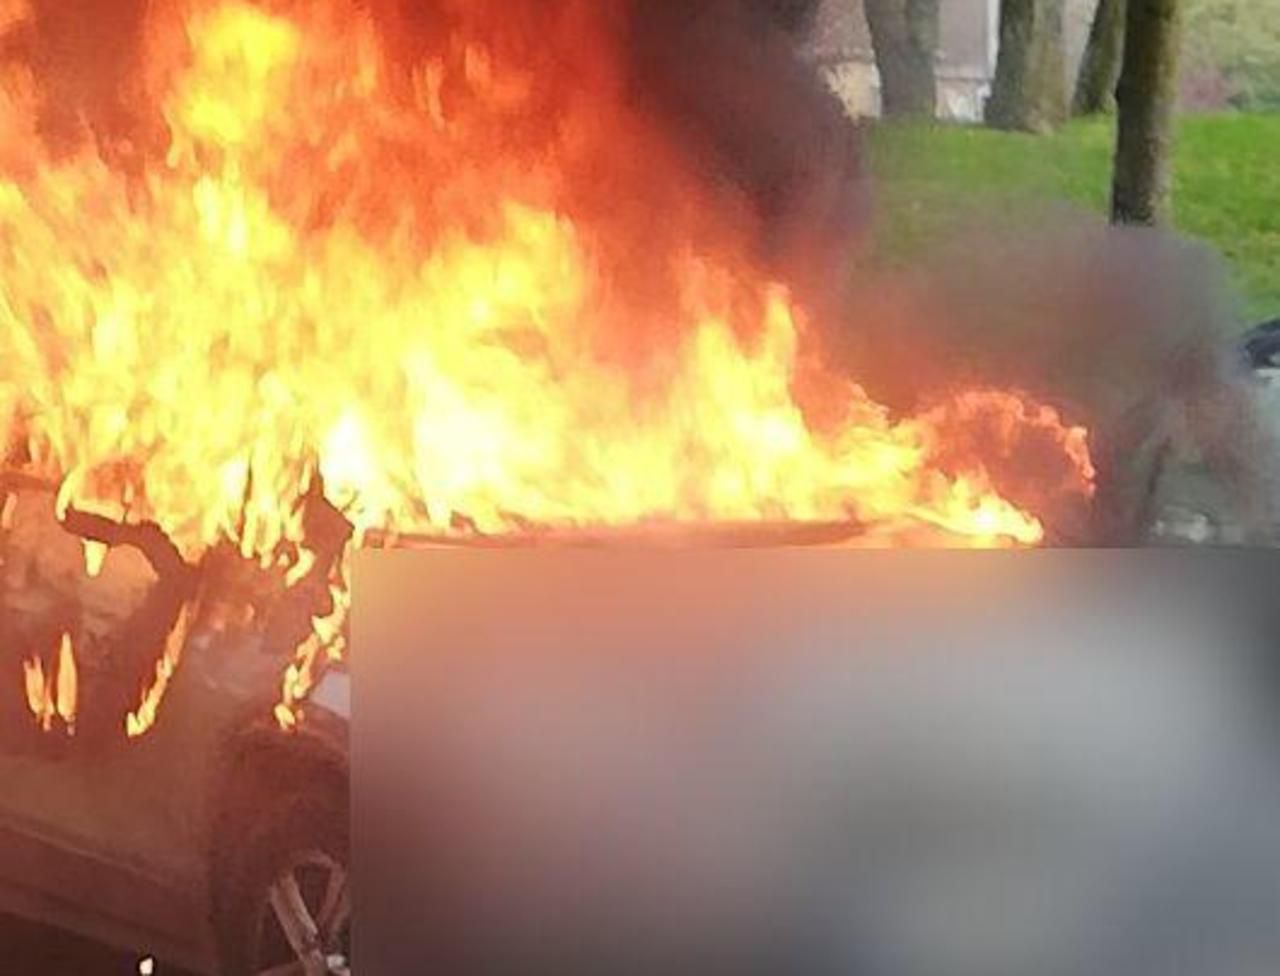 <b></b> Mercredi après-midi, la voiture d’une membre de la liste de Franck Marlin a pris feu devant son domicile, sur le plateau de Guinette.